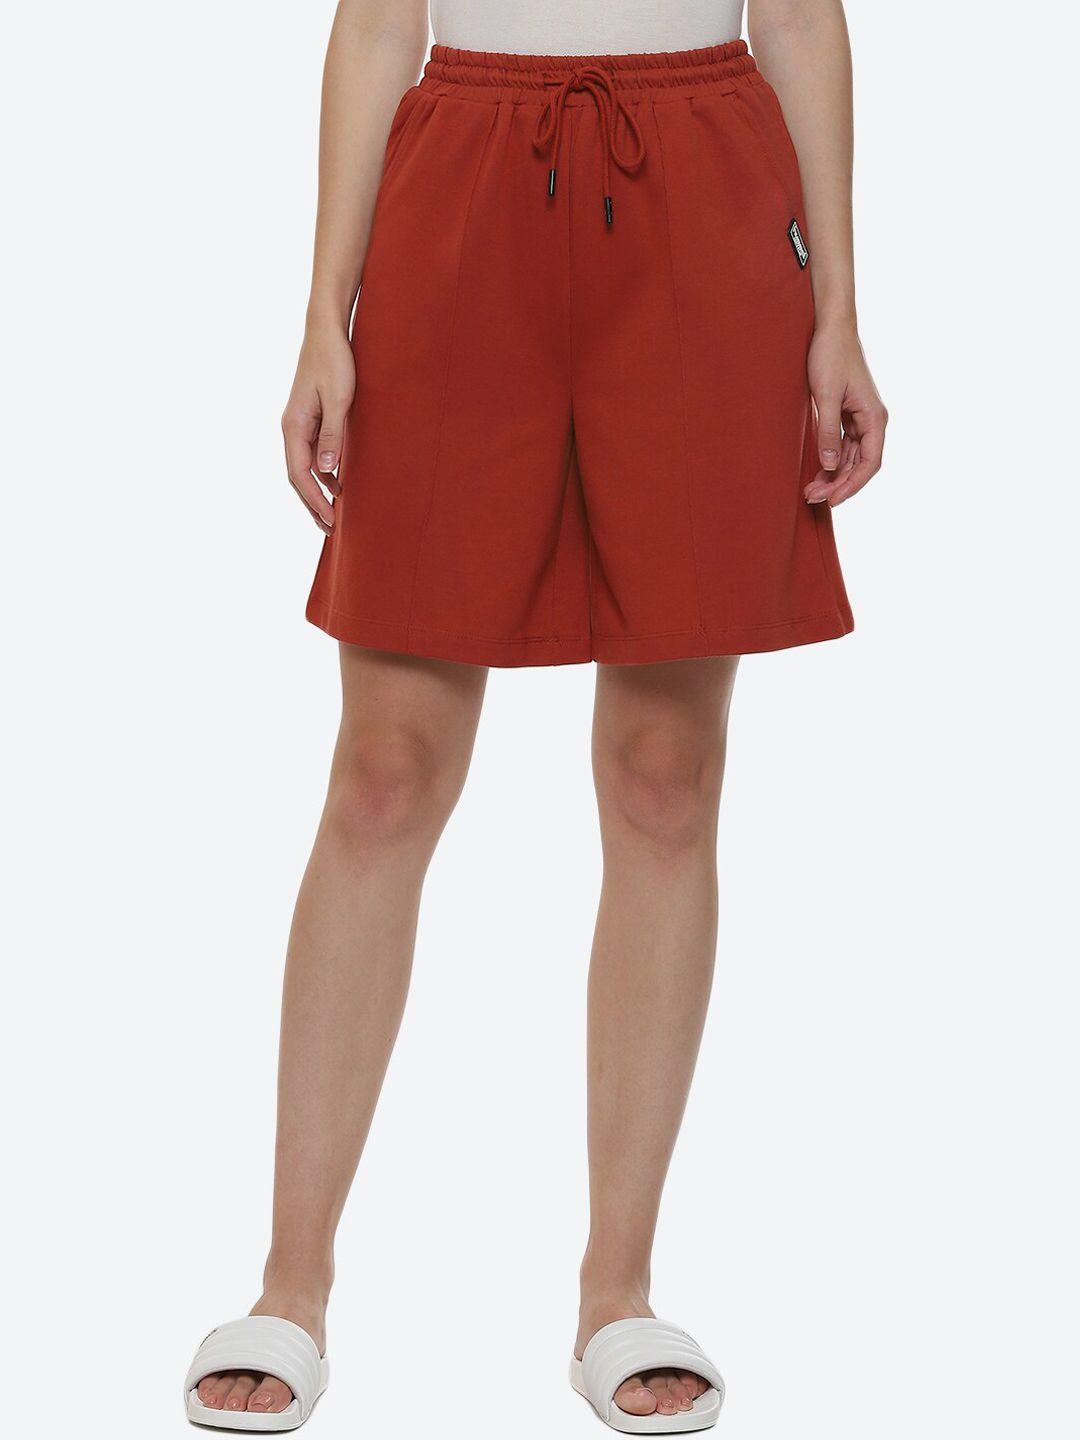 hummel above knee length divided skirt